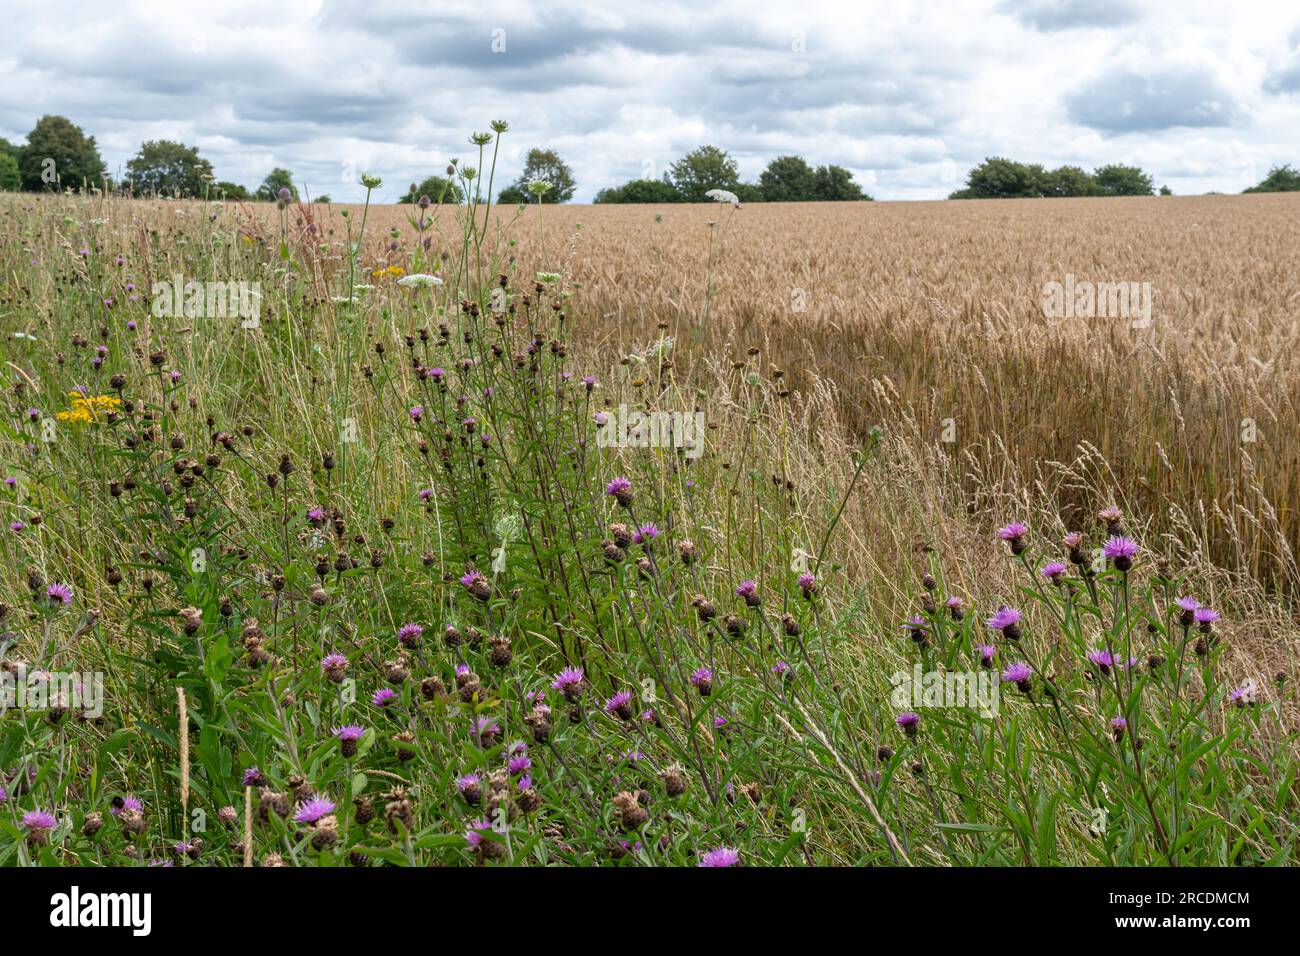 Ein Wildblumenrand am Rande eines Ackerlandes auf Ackerland in Hampshire, England, Großbritannien, im Juli oder Sommer Stockfoto